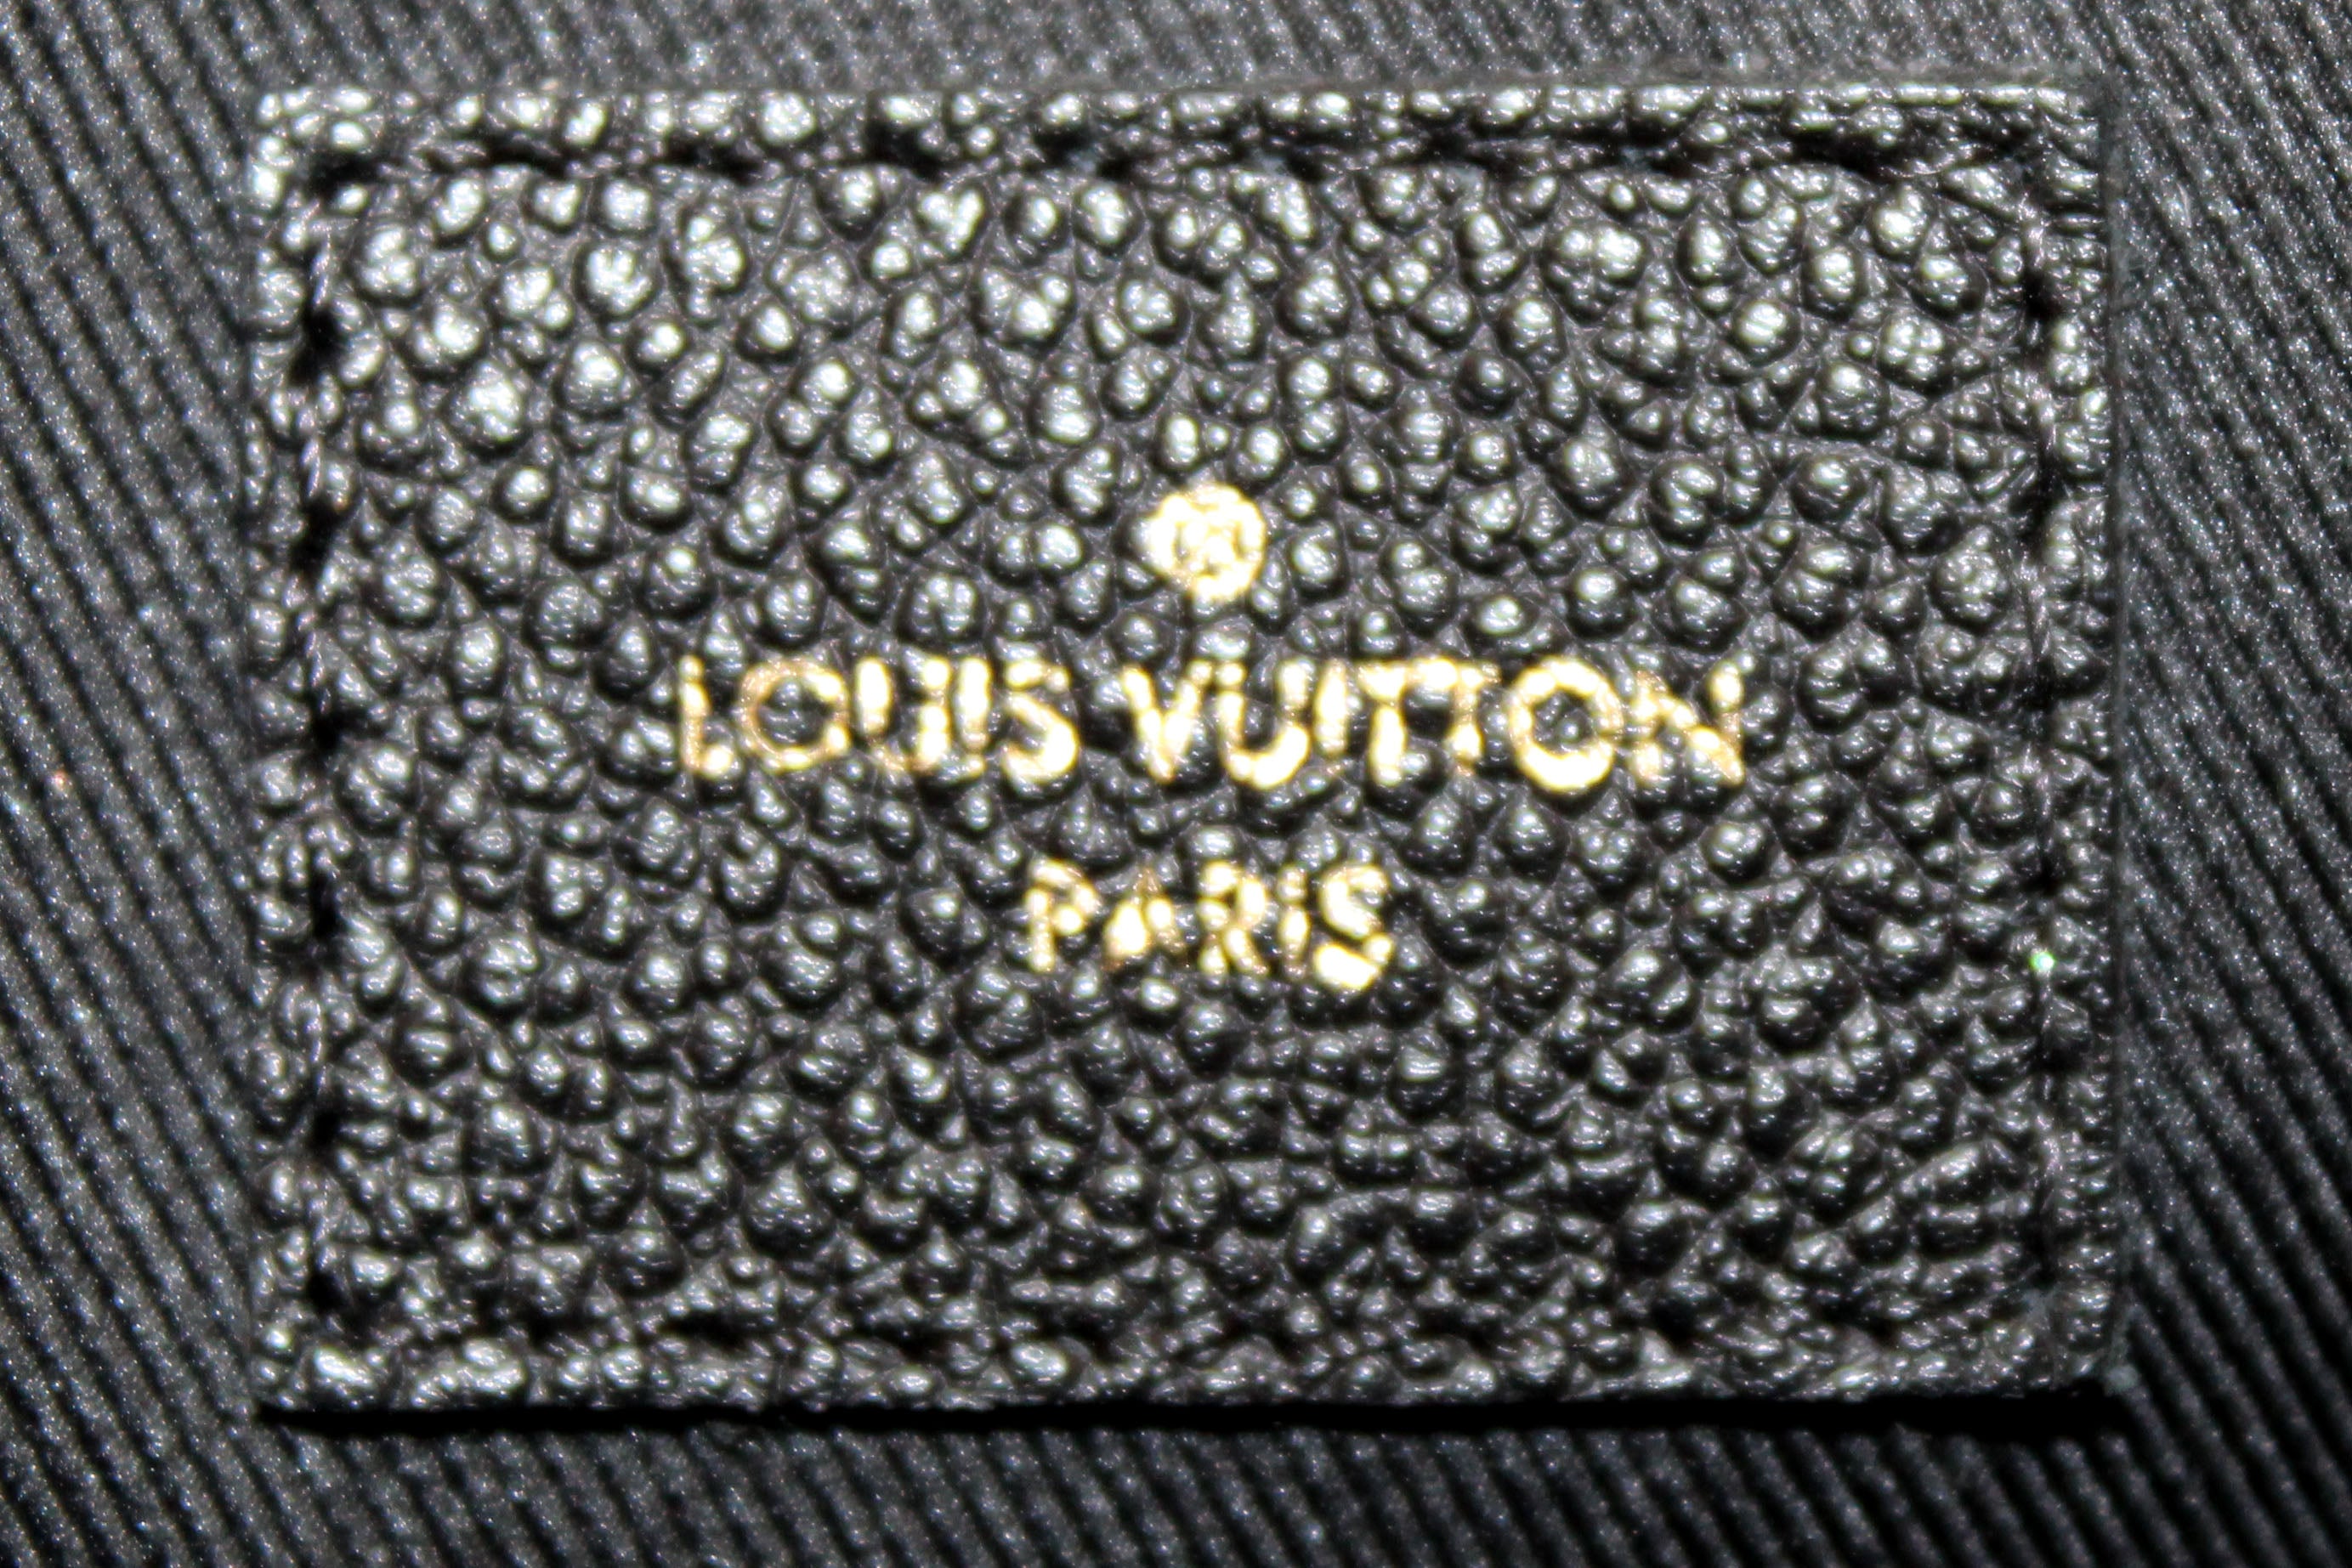 Authentic Louis Vuitton Classic Monogram Tournelle PM Shoulder/ HandBag